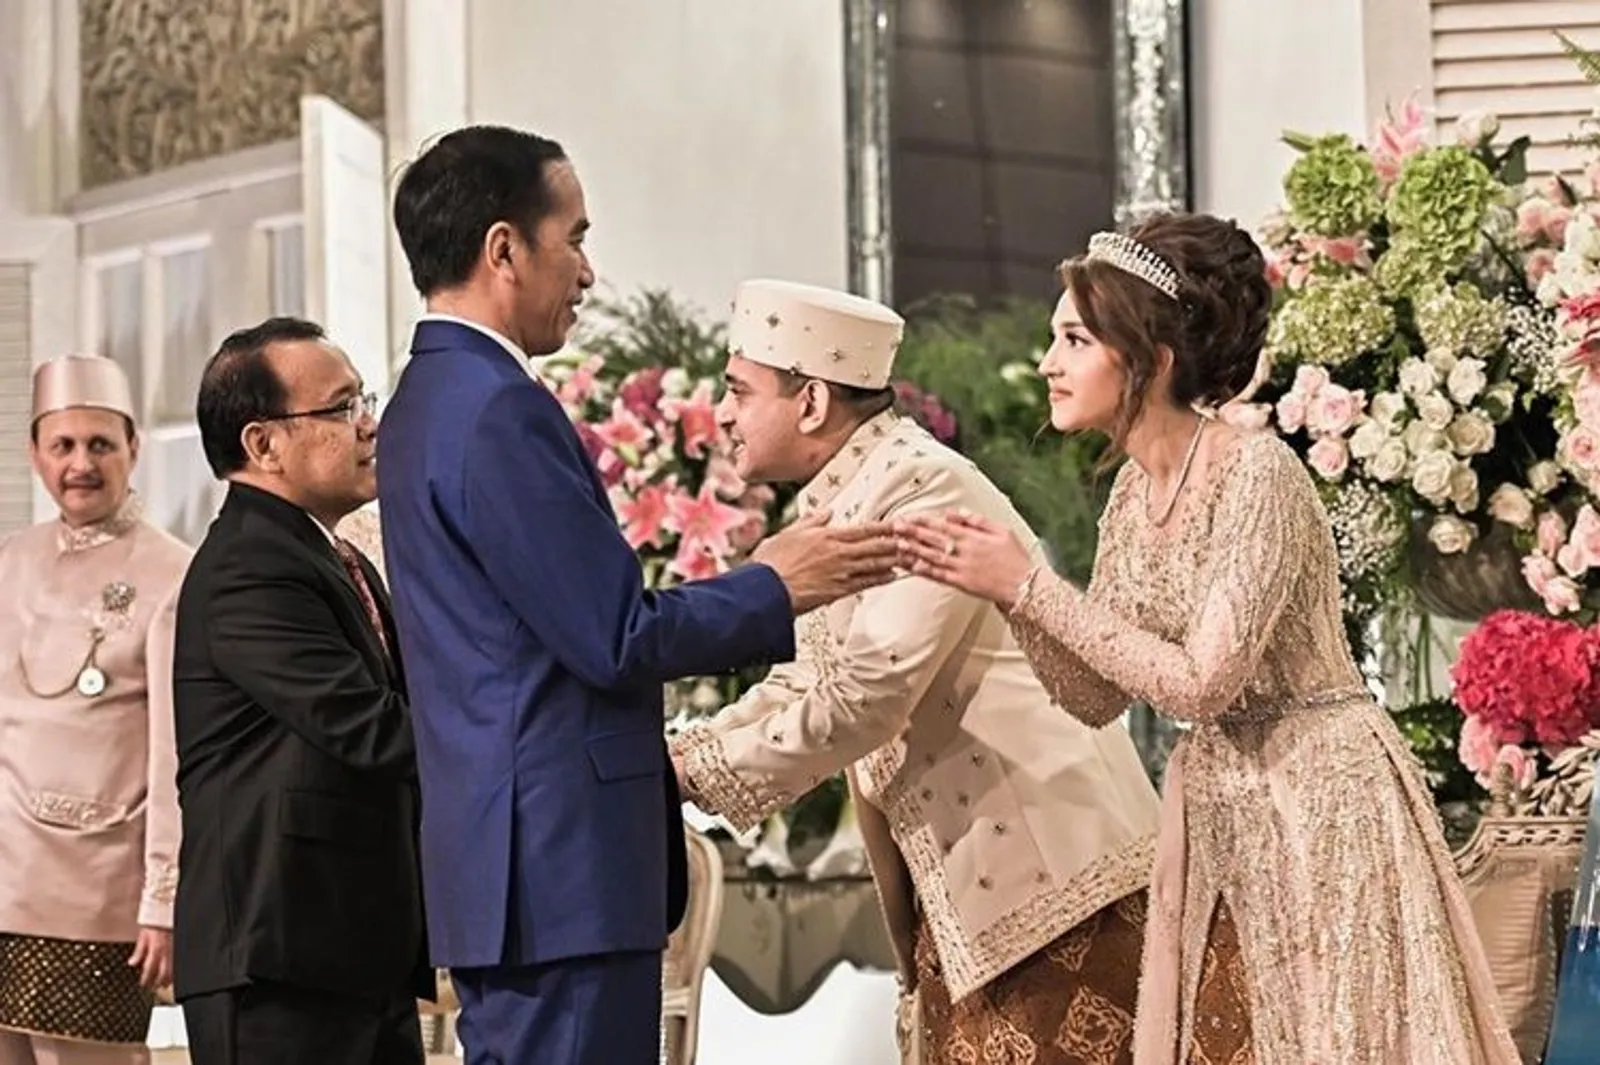 Dihadiri Presiden RI, Ini 5 Fakta di Balik Pernikahan Tsamara Amany